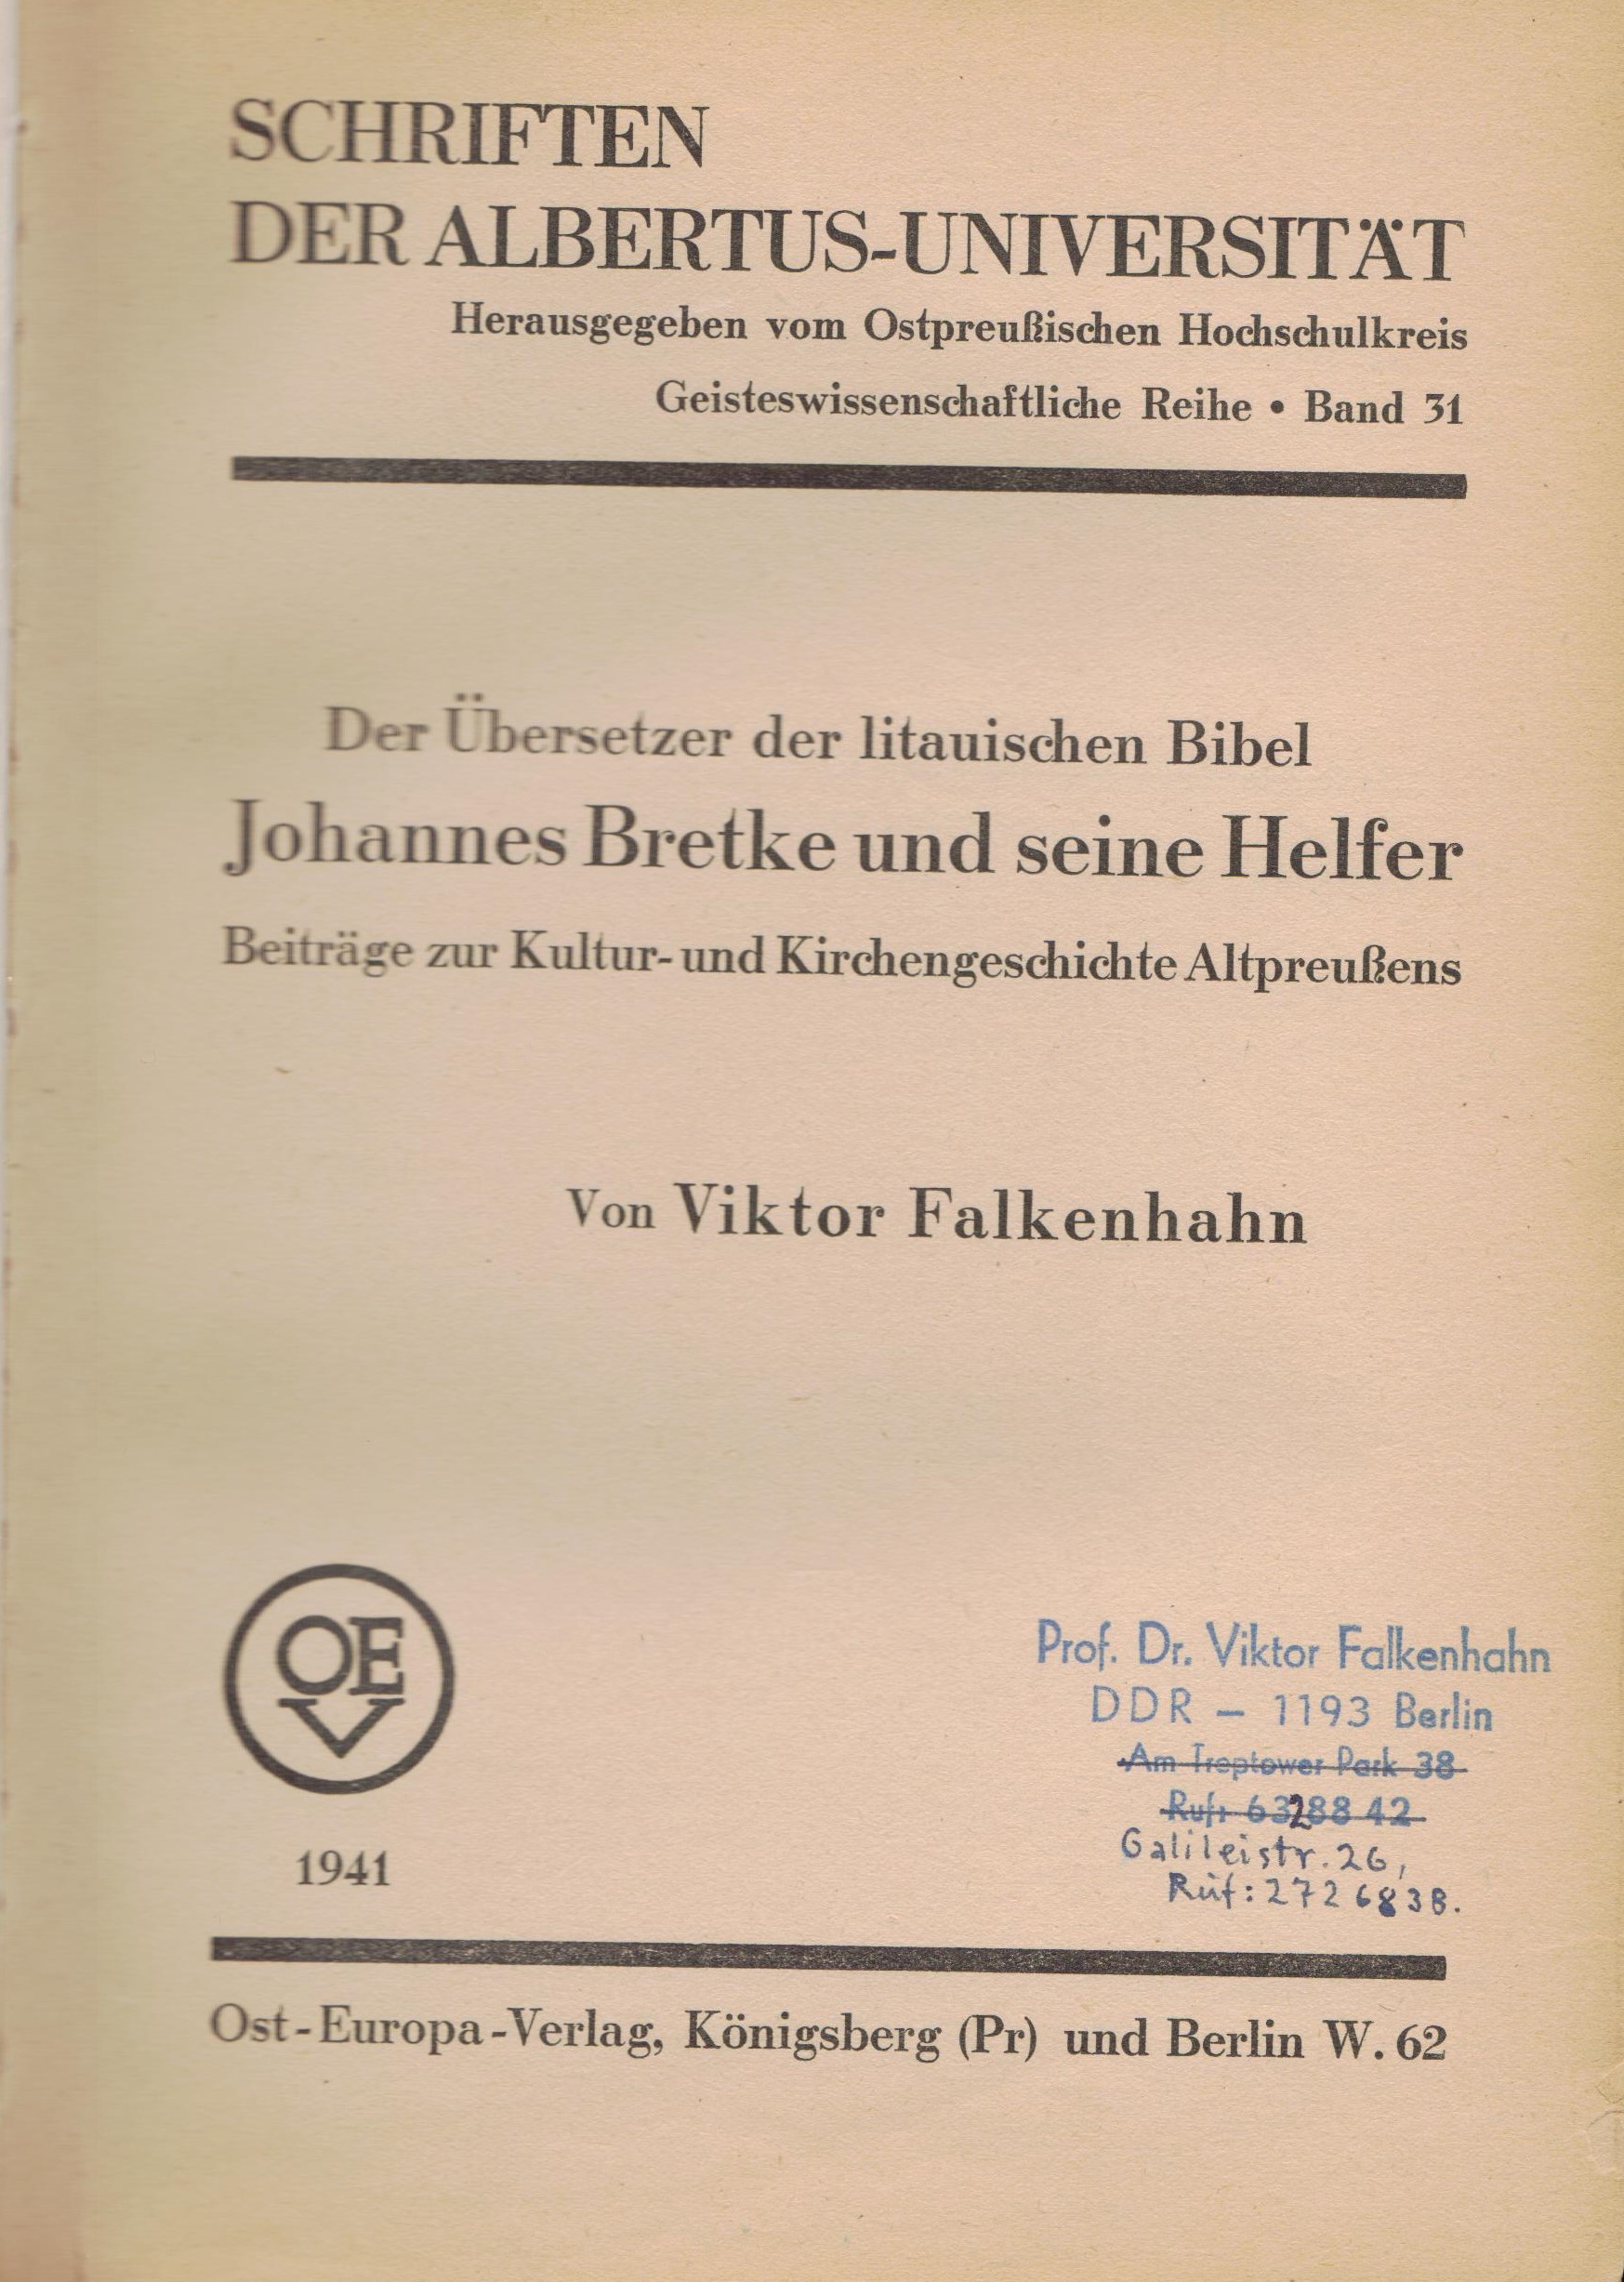 Der Ubersetzer der litauischen Bibel Johannes Bretke und seine Helfer“ [Biblijos vertėjas į lietuvių kalbą J. Bretkūnas ir jo talkininkai]. Tilžė, 1941 m. MLLM 55559